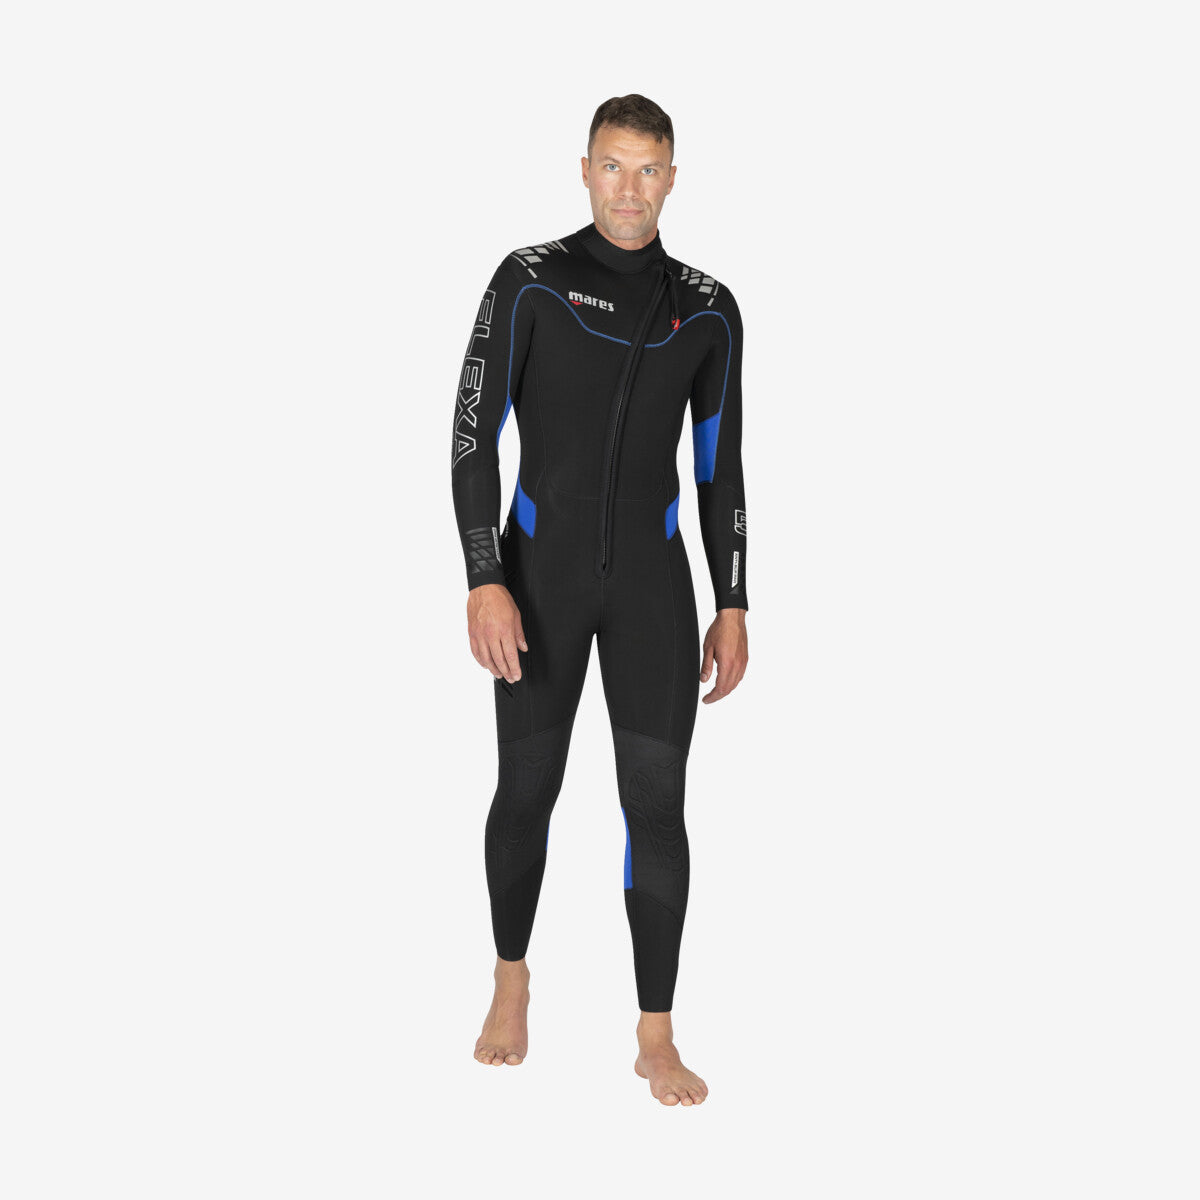 MARES Wetsuit Flexa 5/4 Man חליפת צלילה ארוכה לגברים